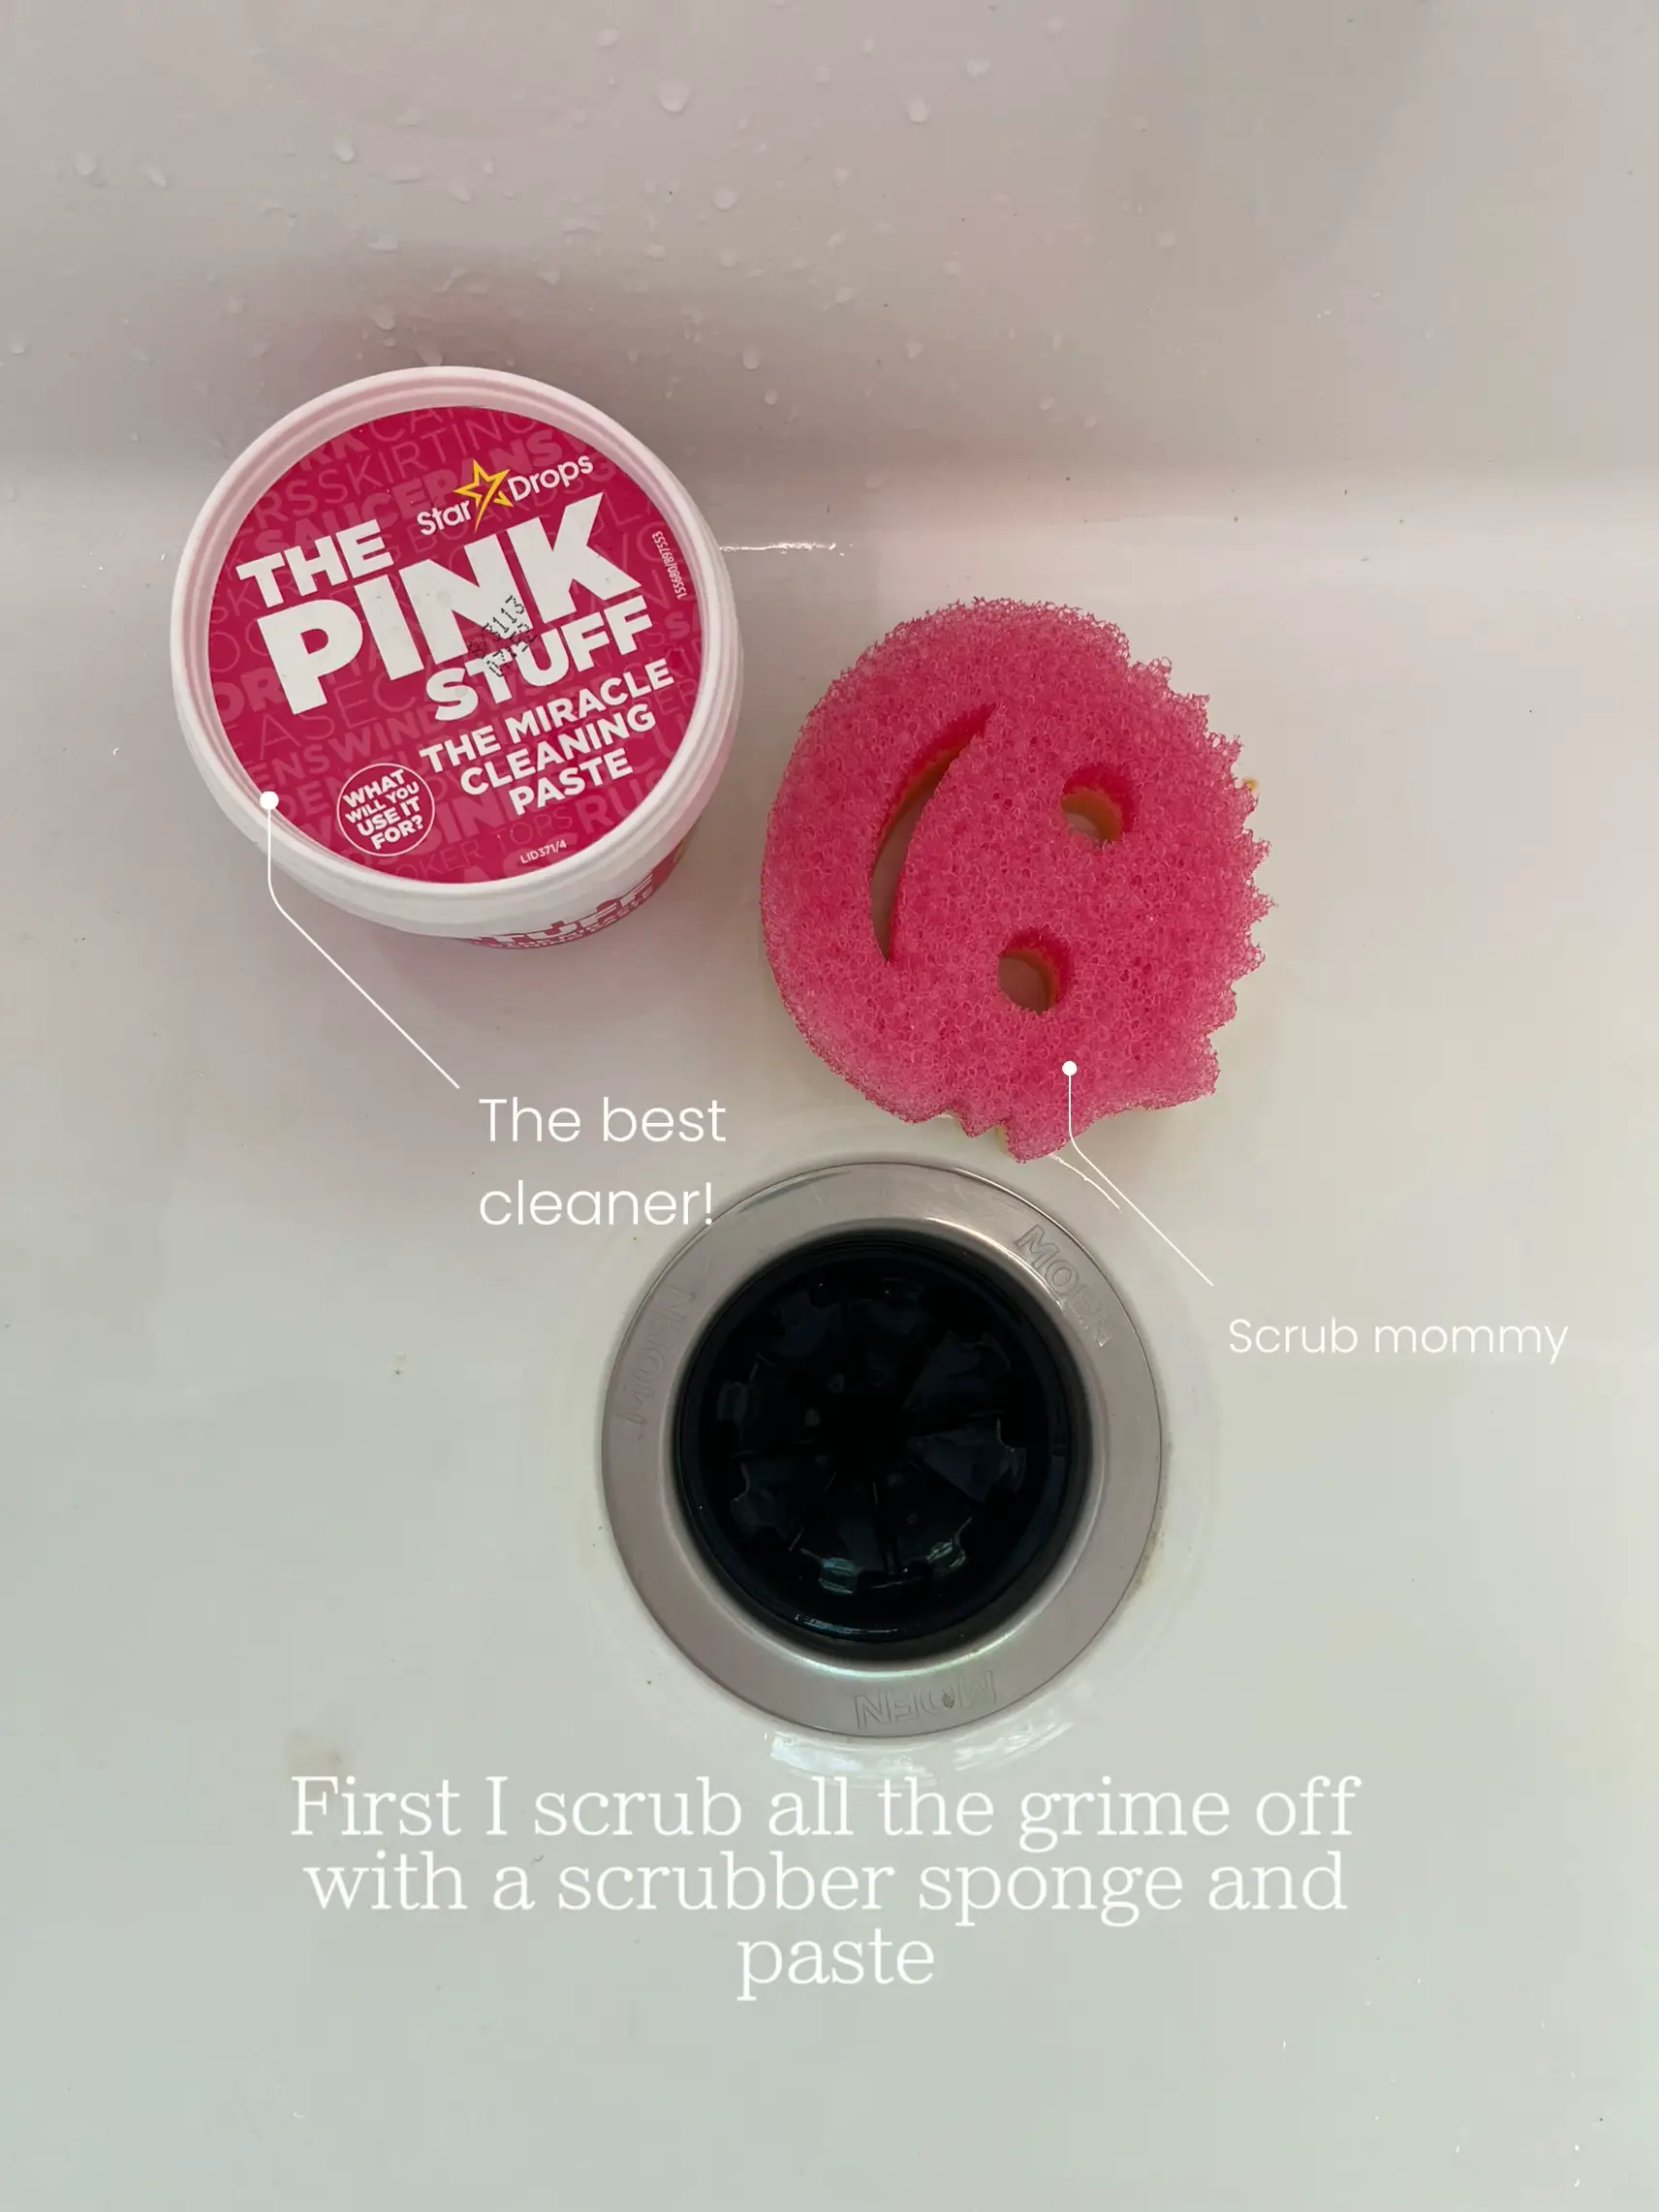 Scrub Daddy Dye Free Scrub Mommy … curated on LTK